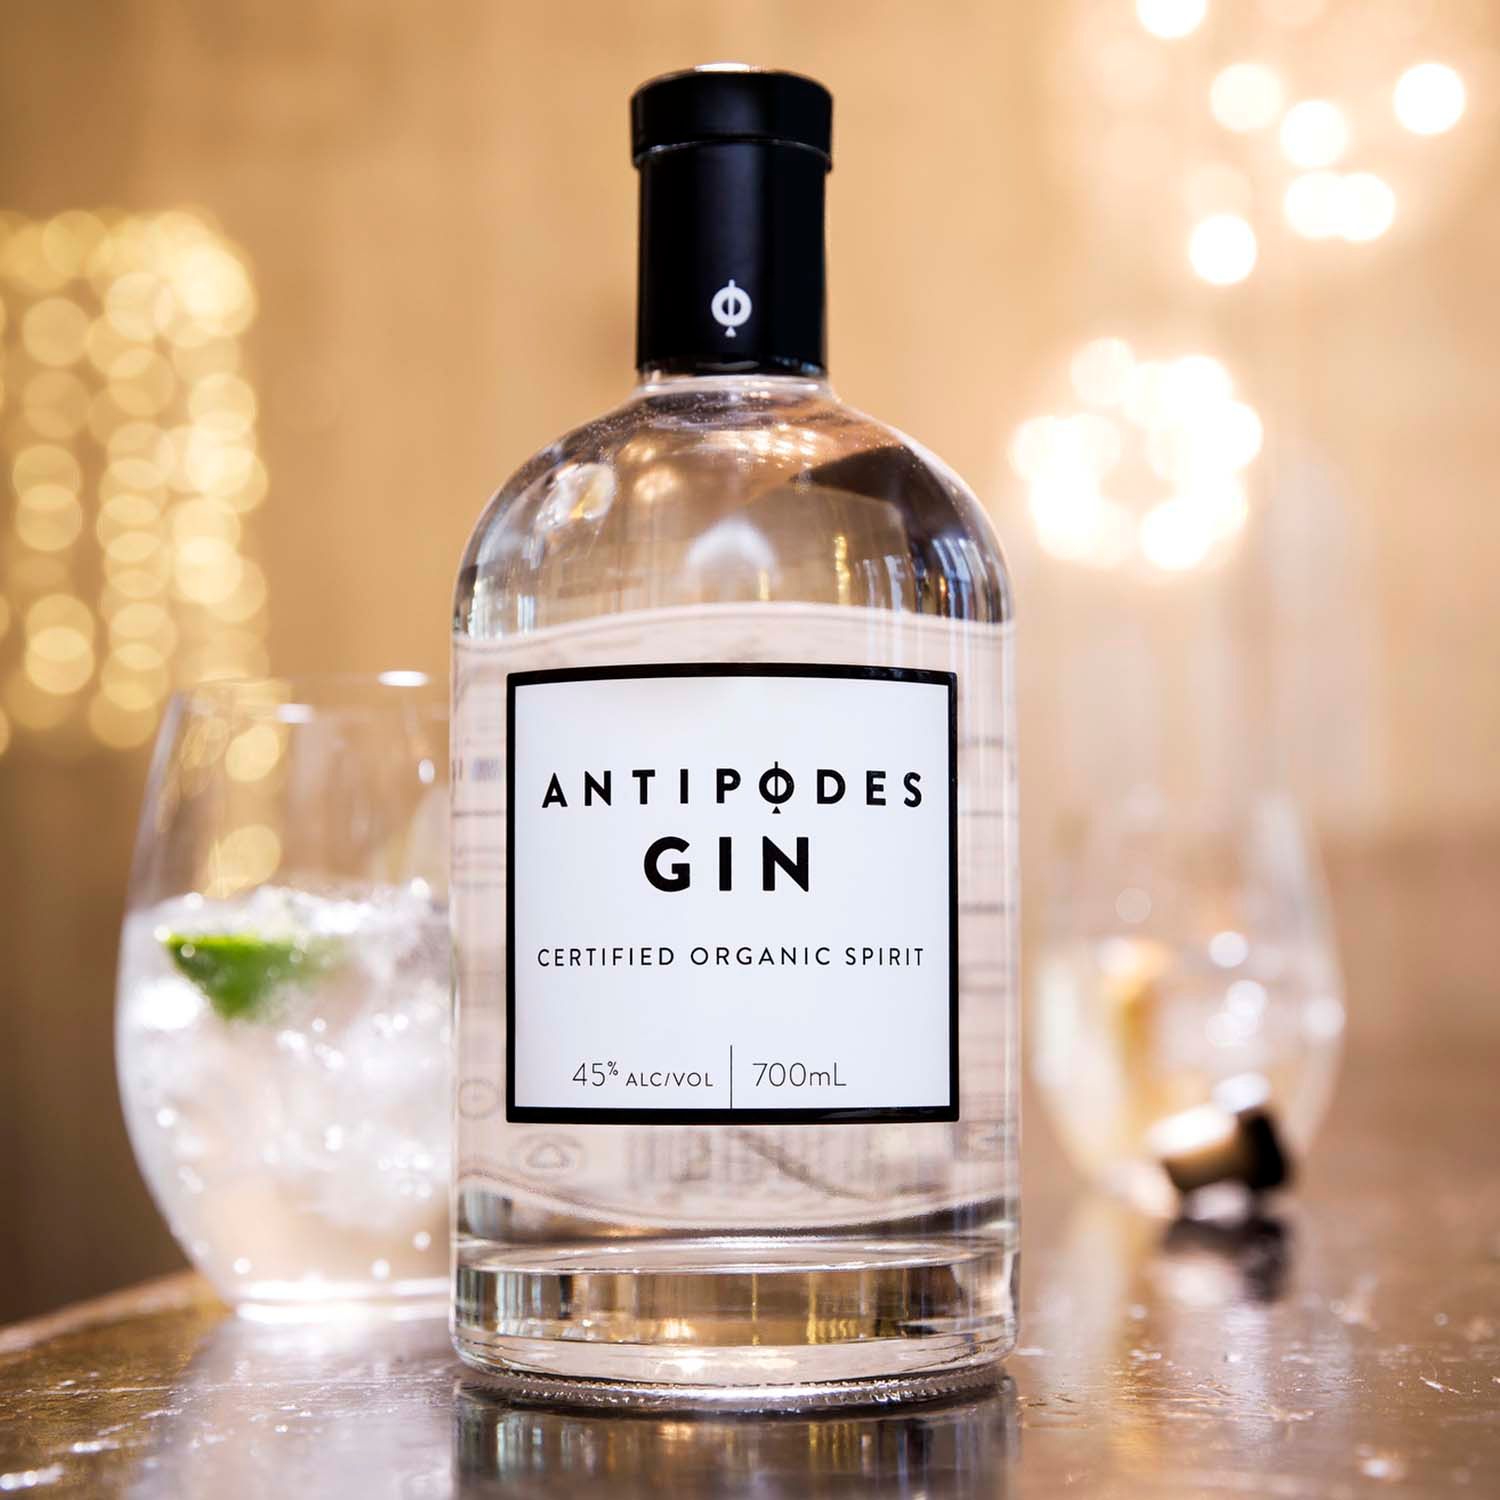 Antipodes Gin Co.